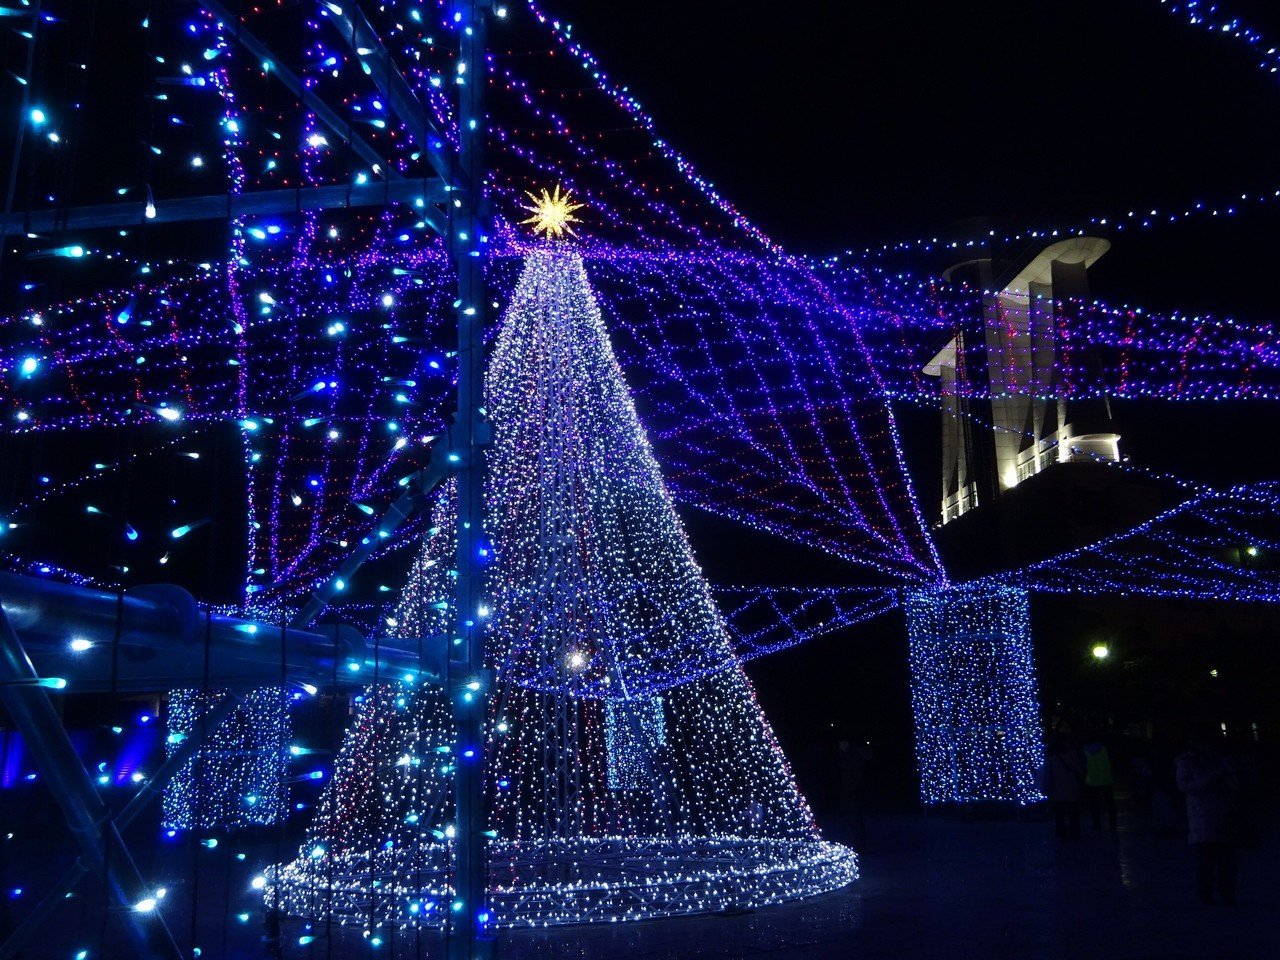 名古屋港ガーデン埠頭クリスマスイルミネーション 19年 おいなごちゃん おいでよ名古屋 Note